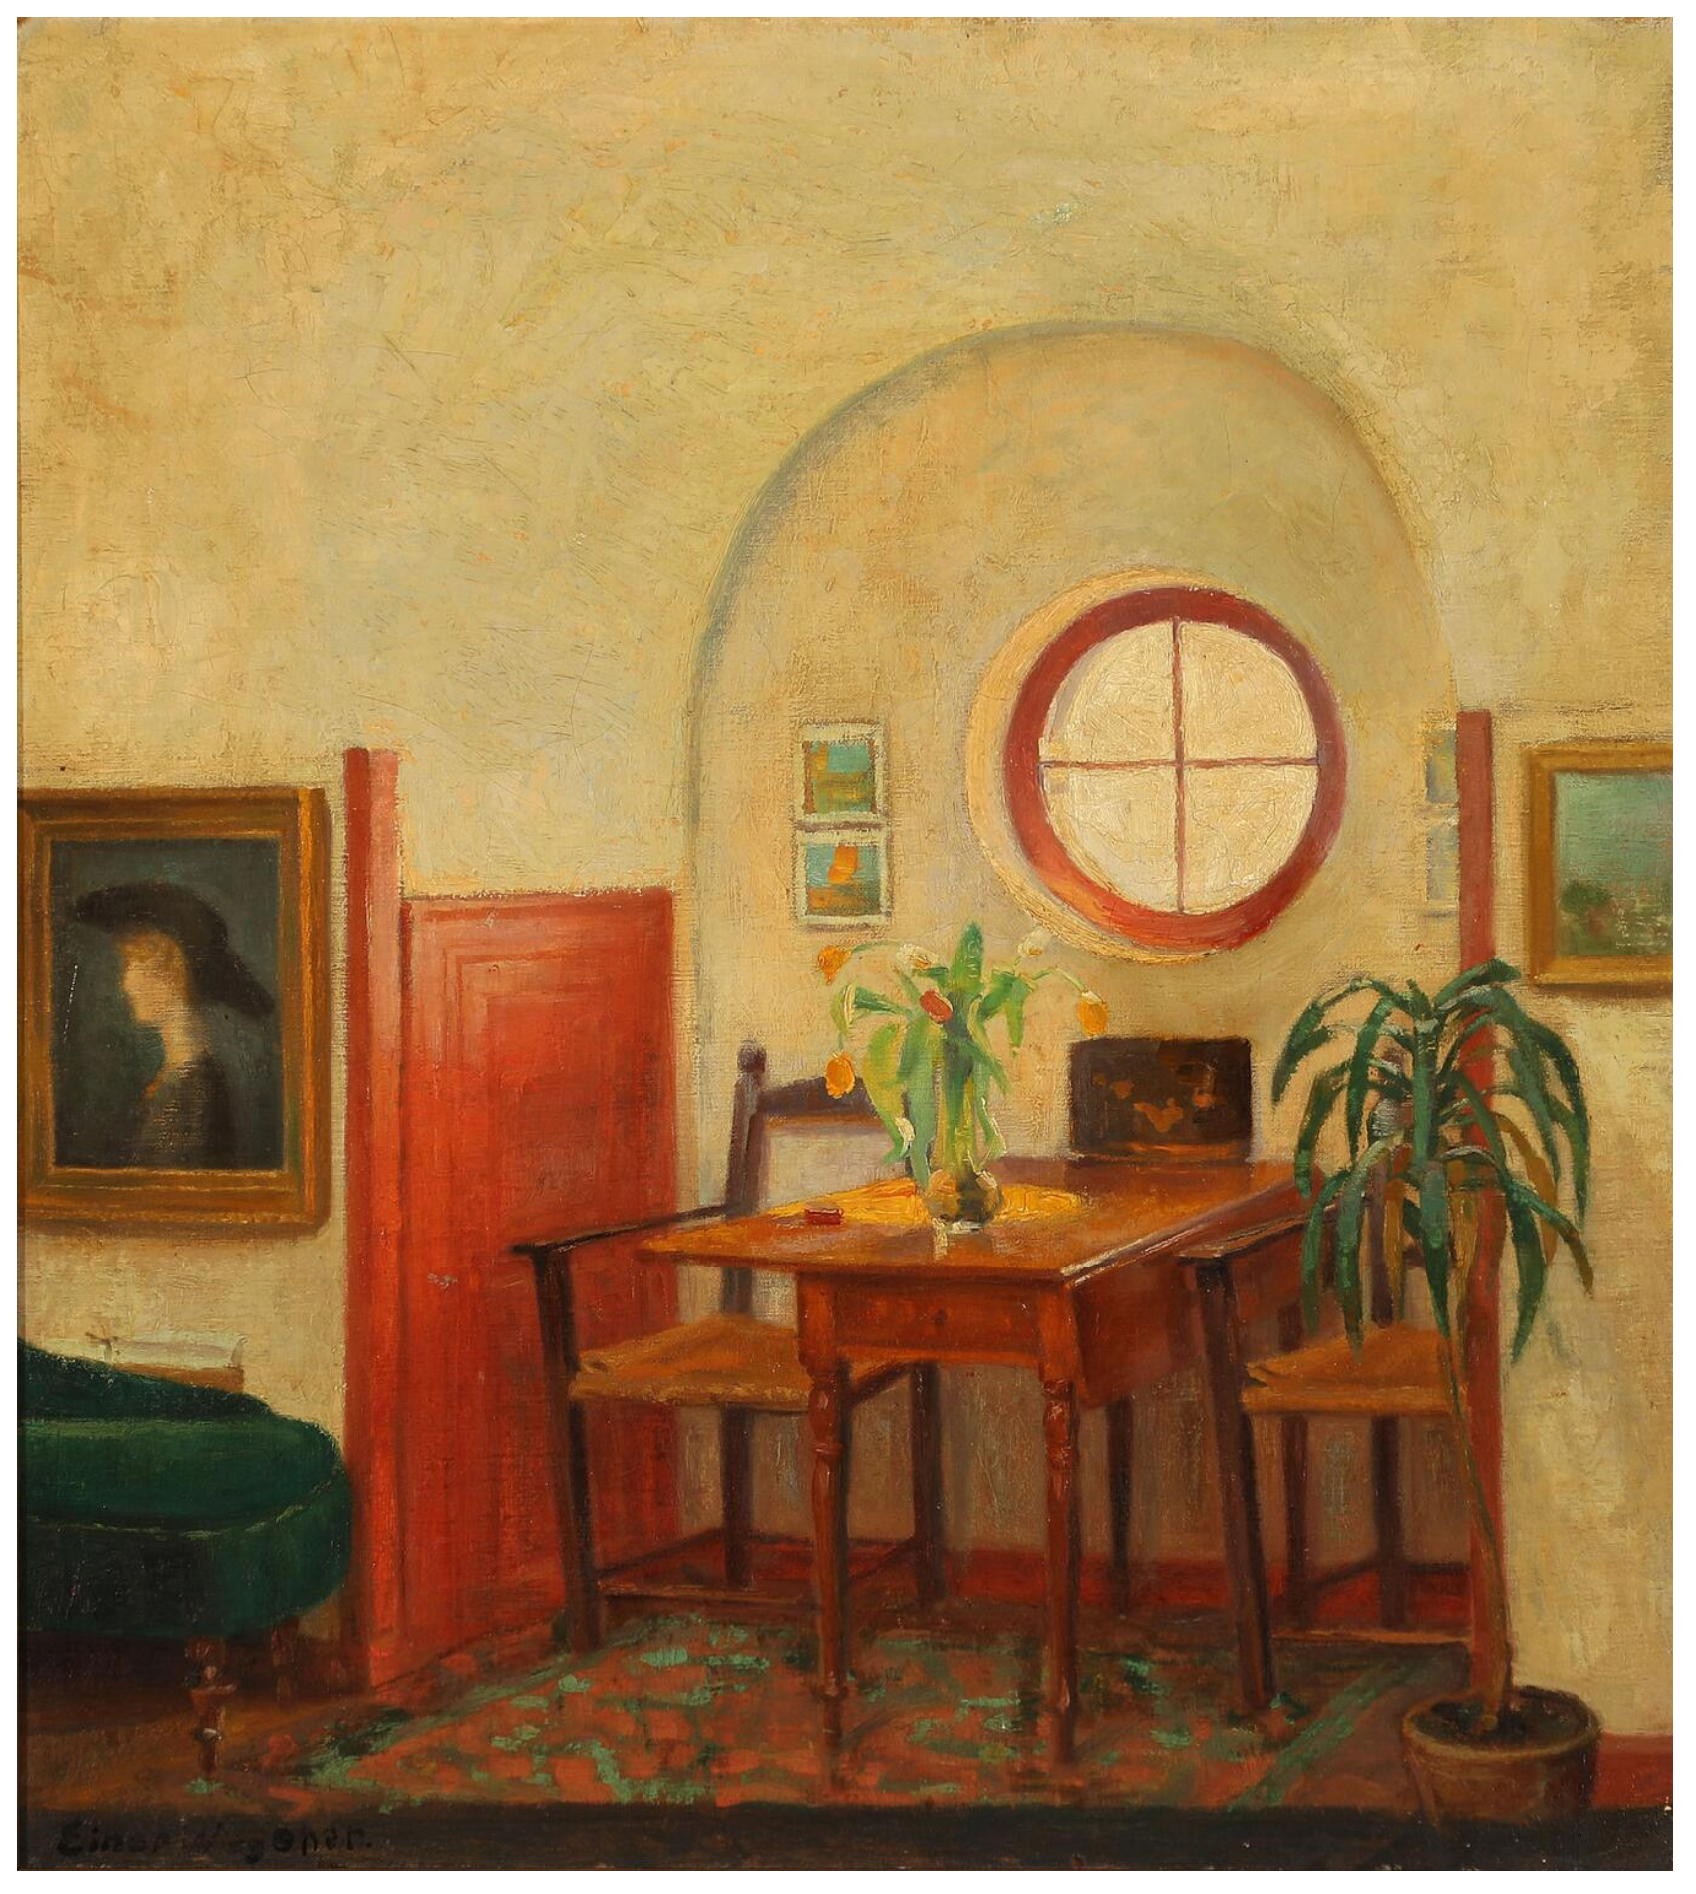 Lili Elbe [Einar Wegner] Copenhagen Studio, ca. 1900